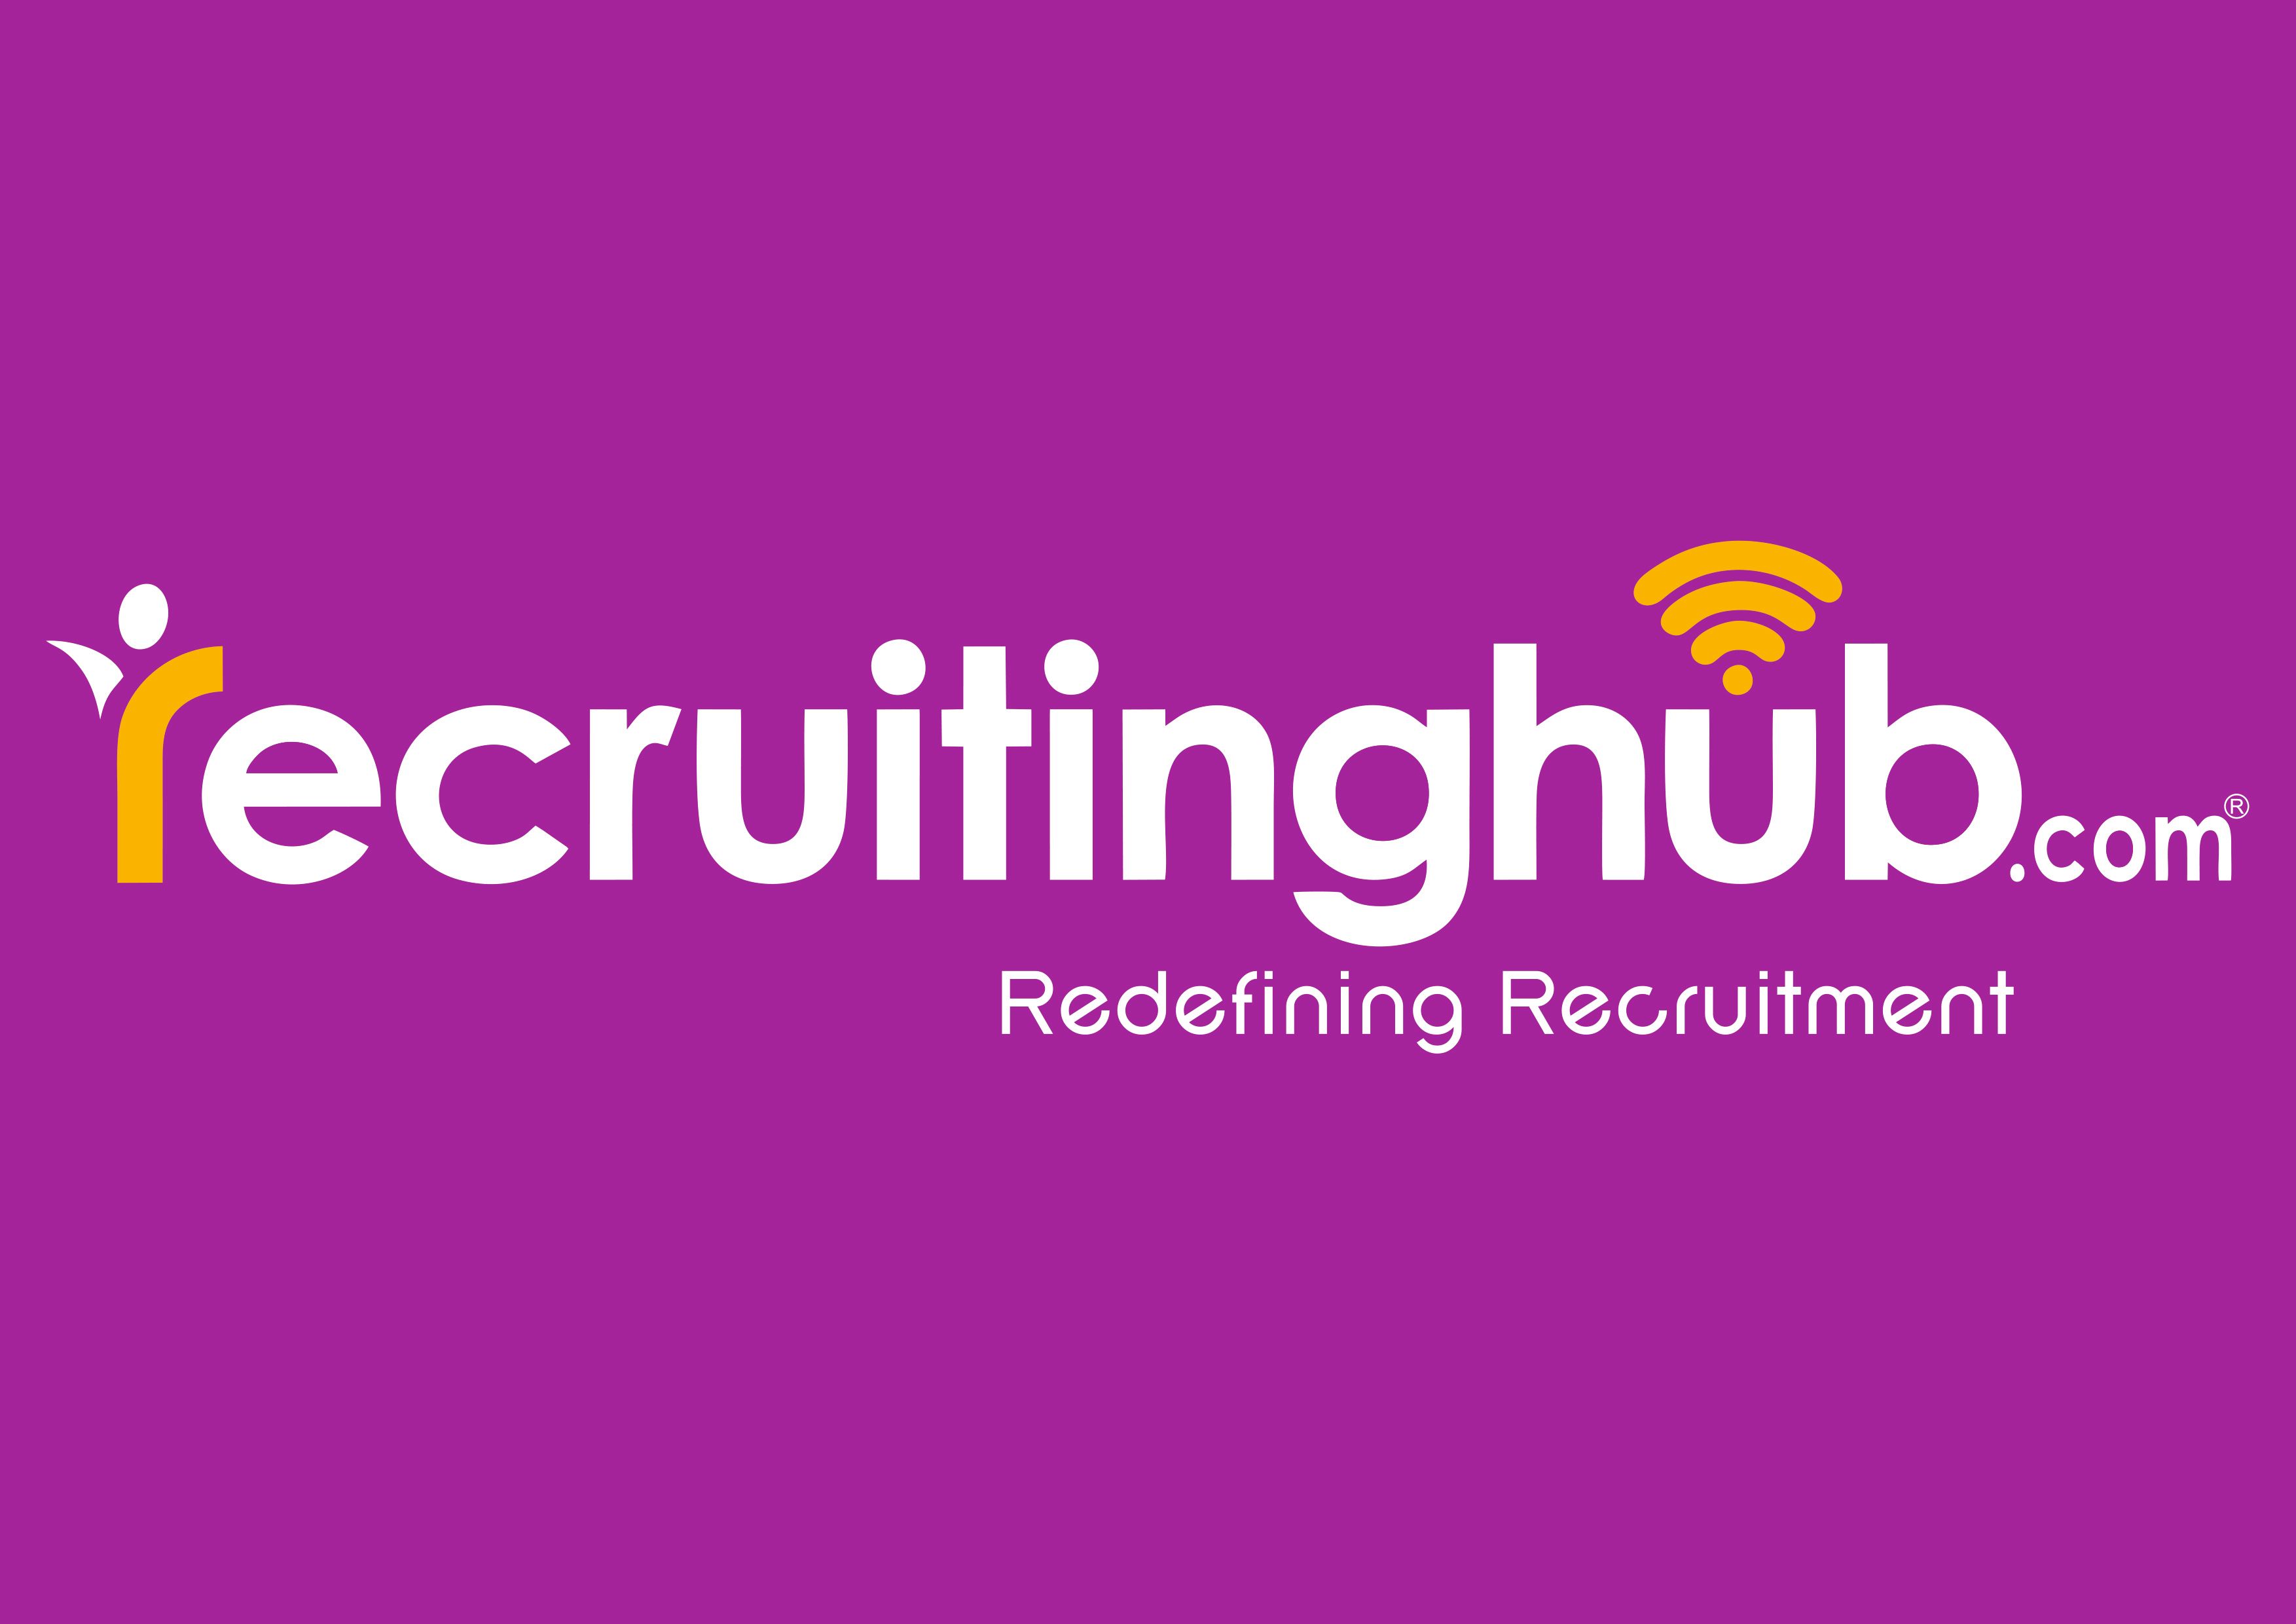 RecruitingHub.com